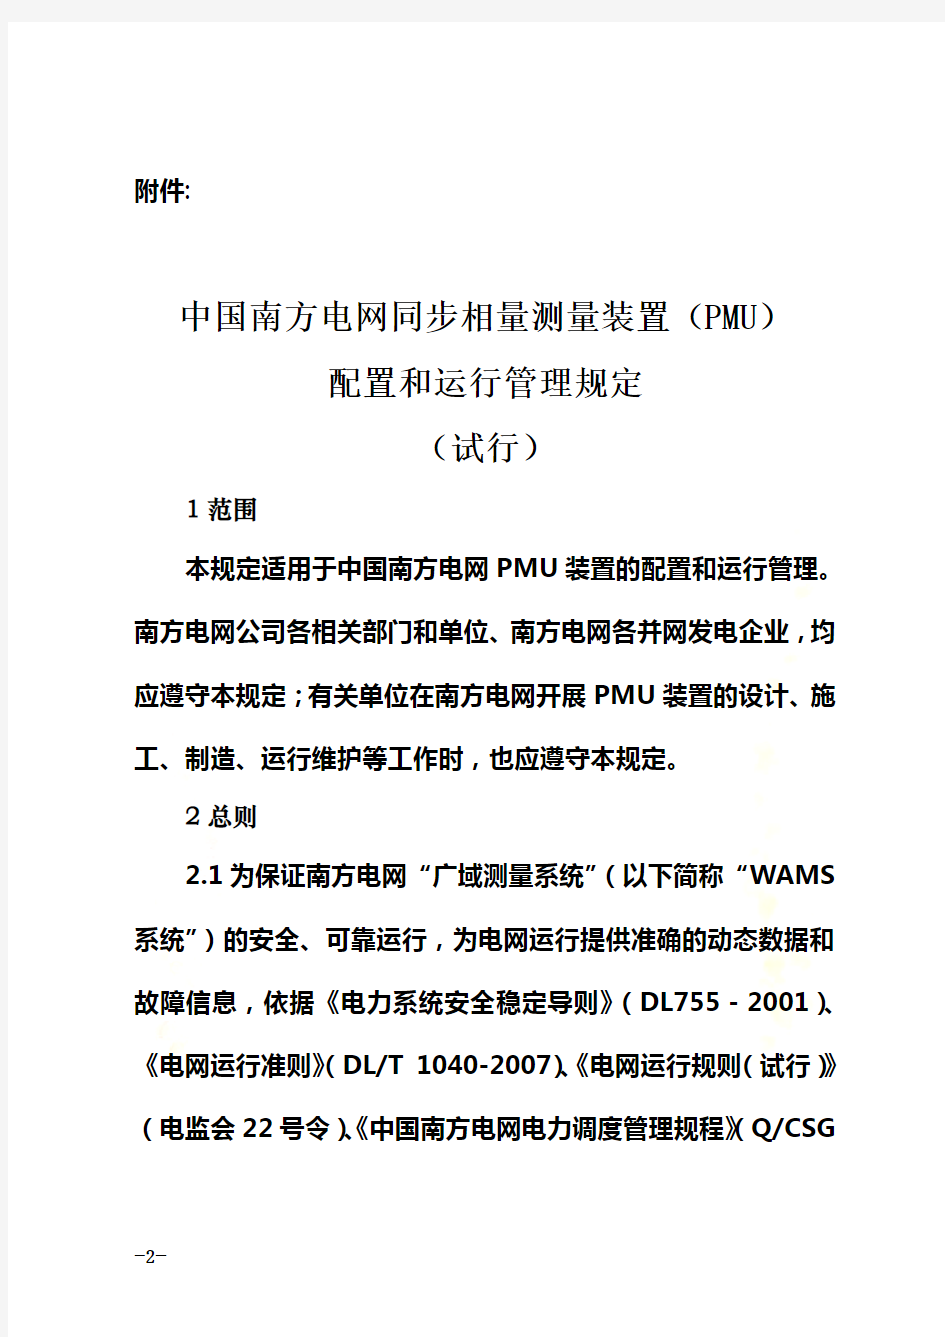 《中国南方电网同步相量测量装置(PMU)配置和运行管理规定(试行)》要点